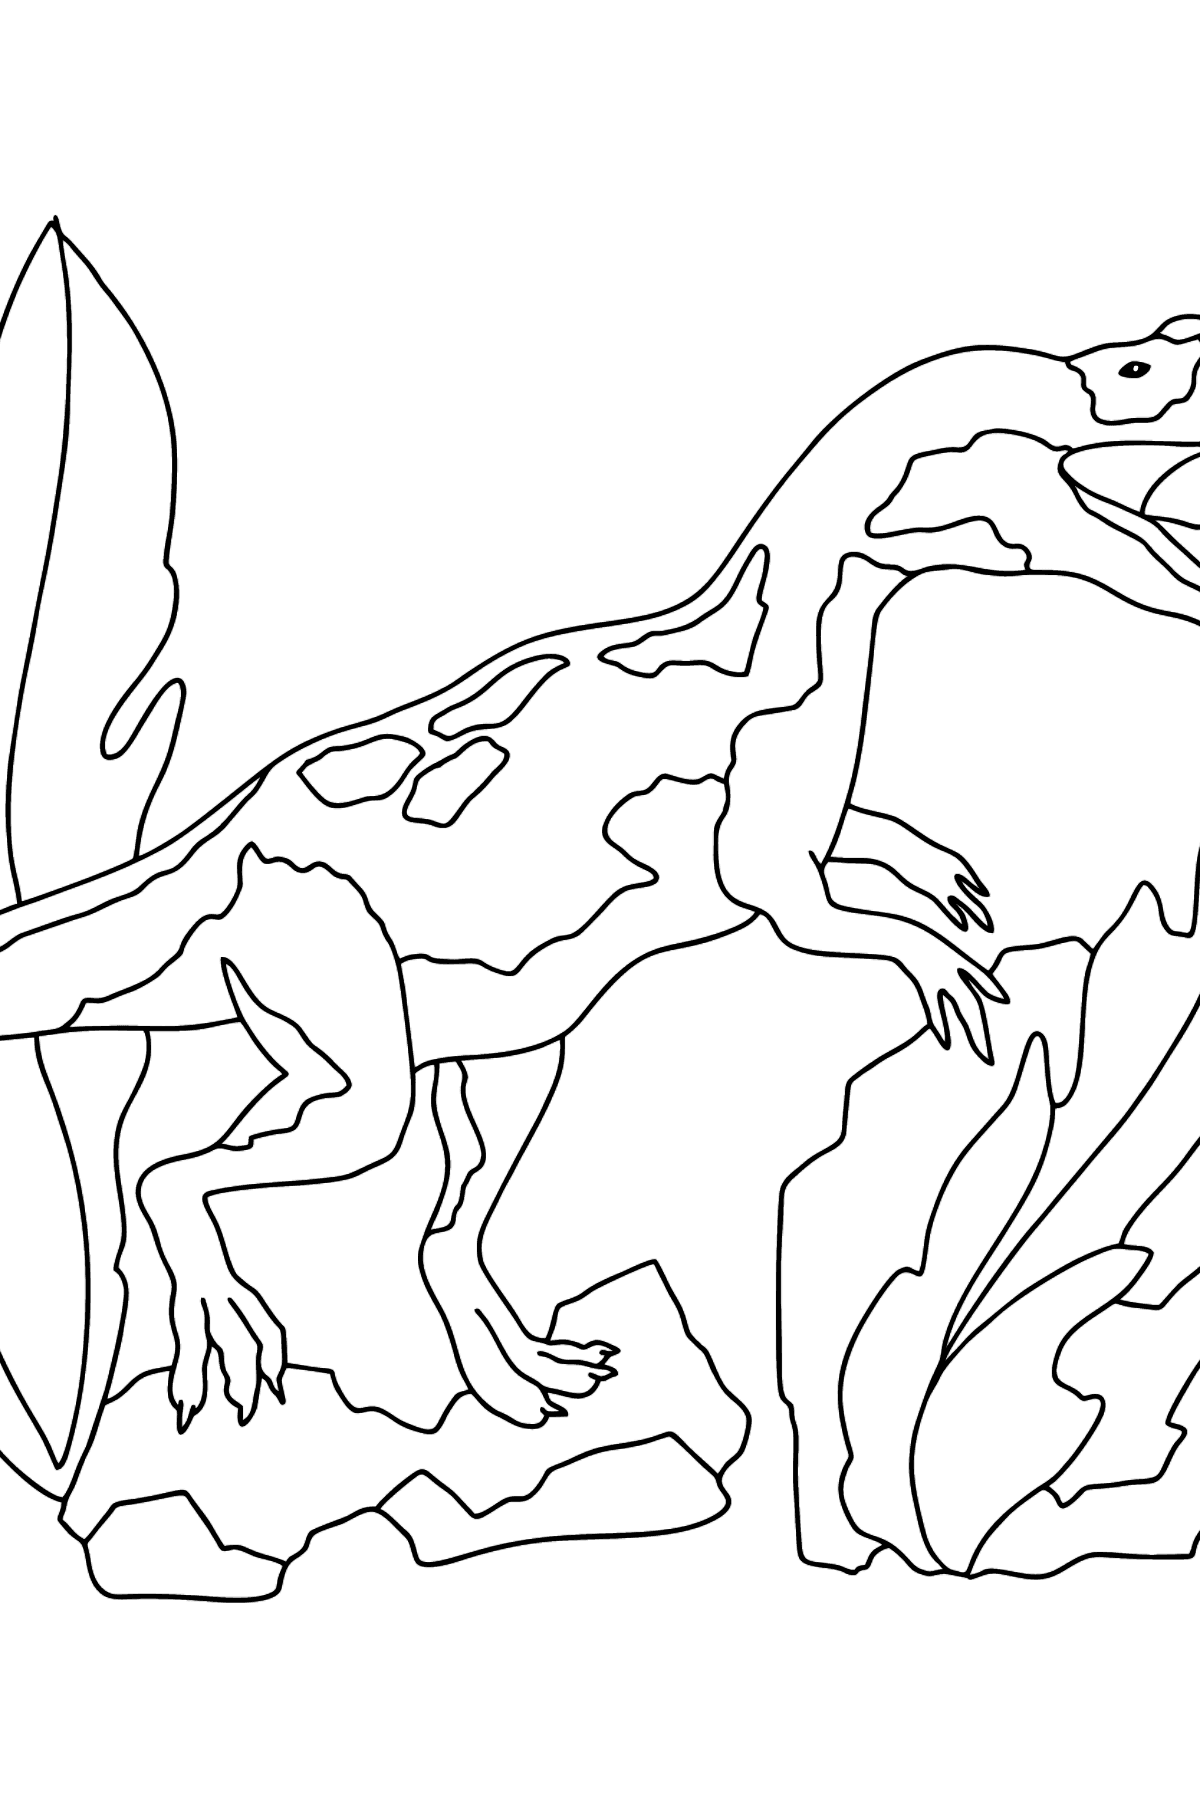 Розмальовка динозаврів юрського періоду (складно) - Розмальовки для дітей